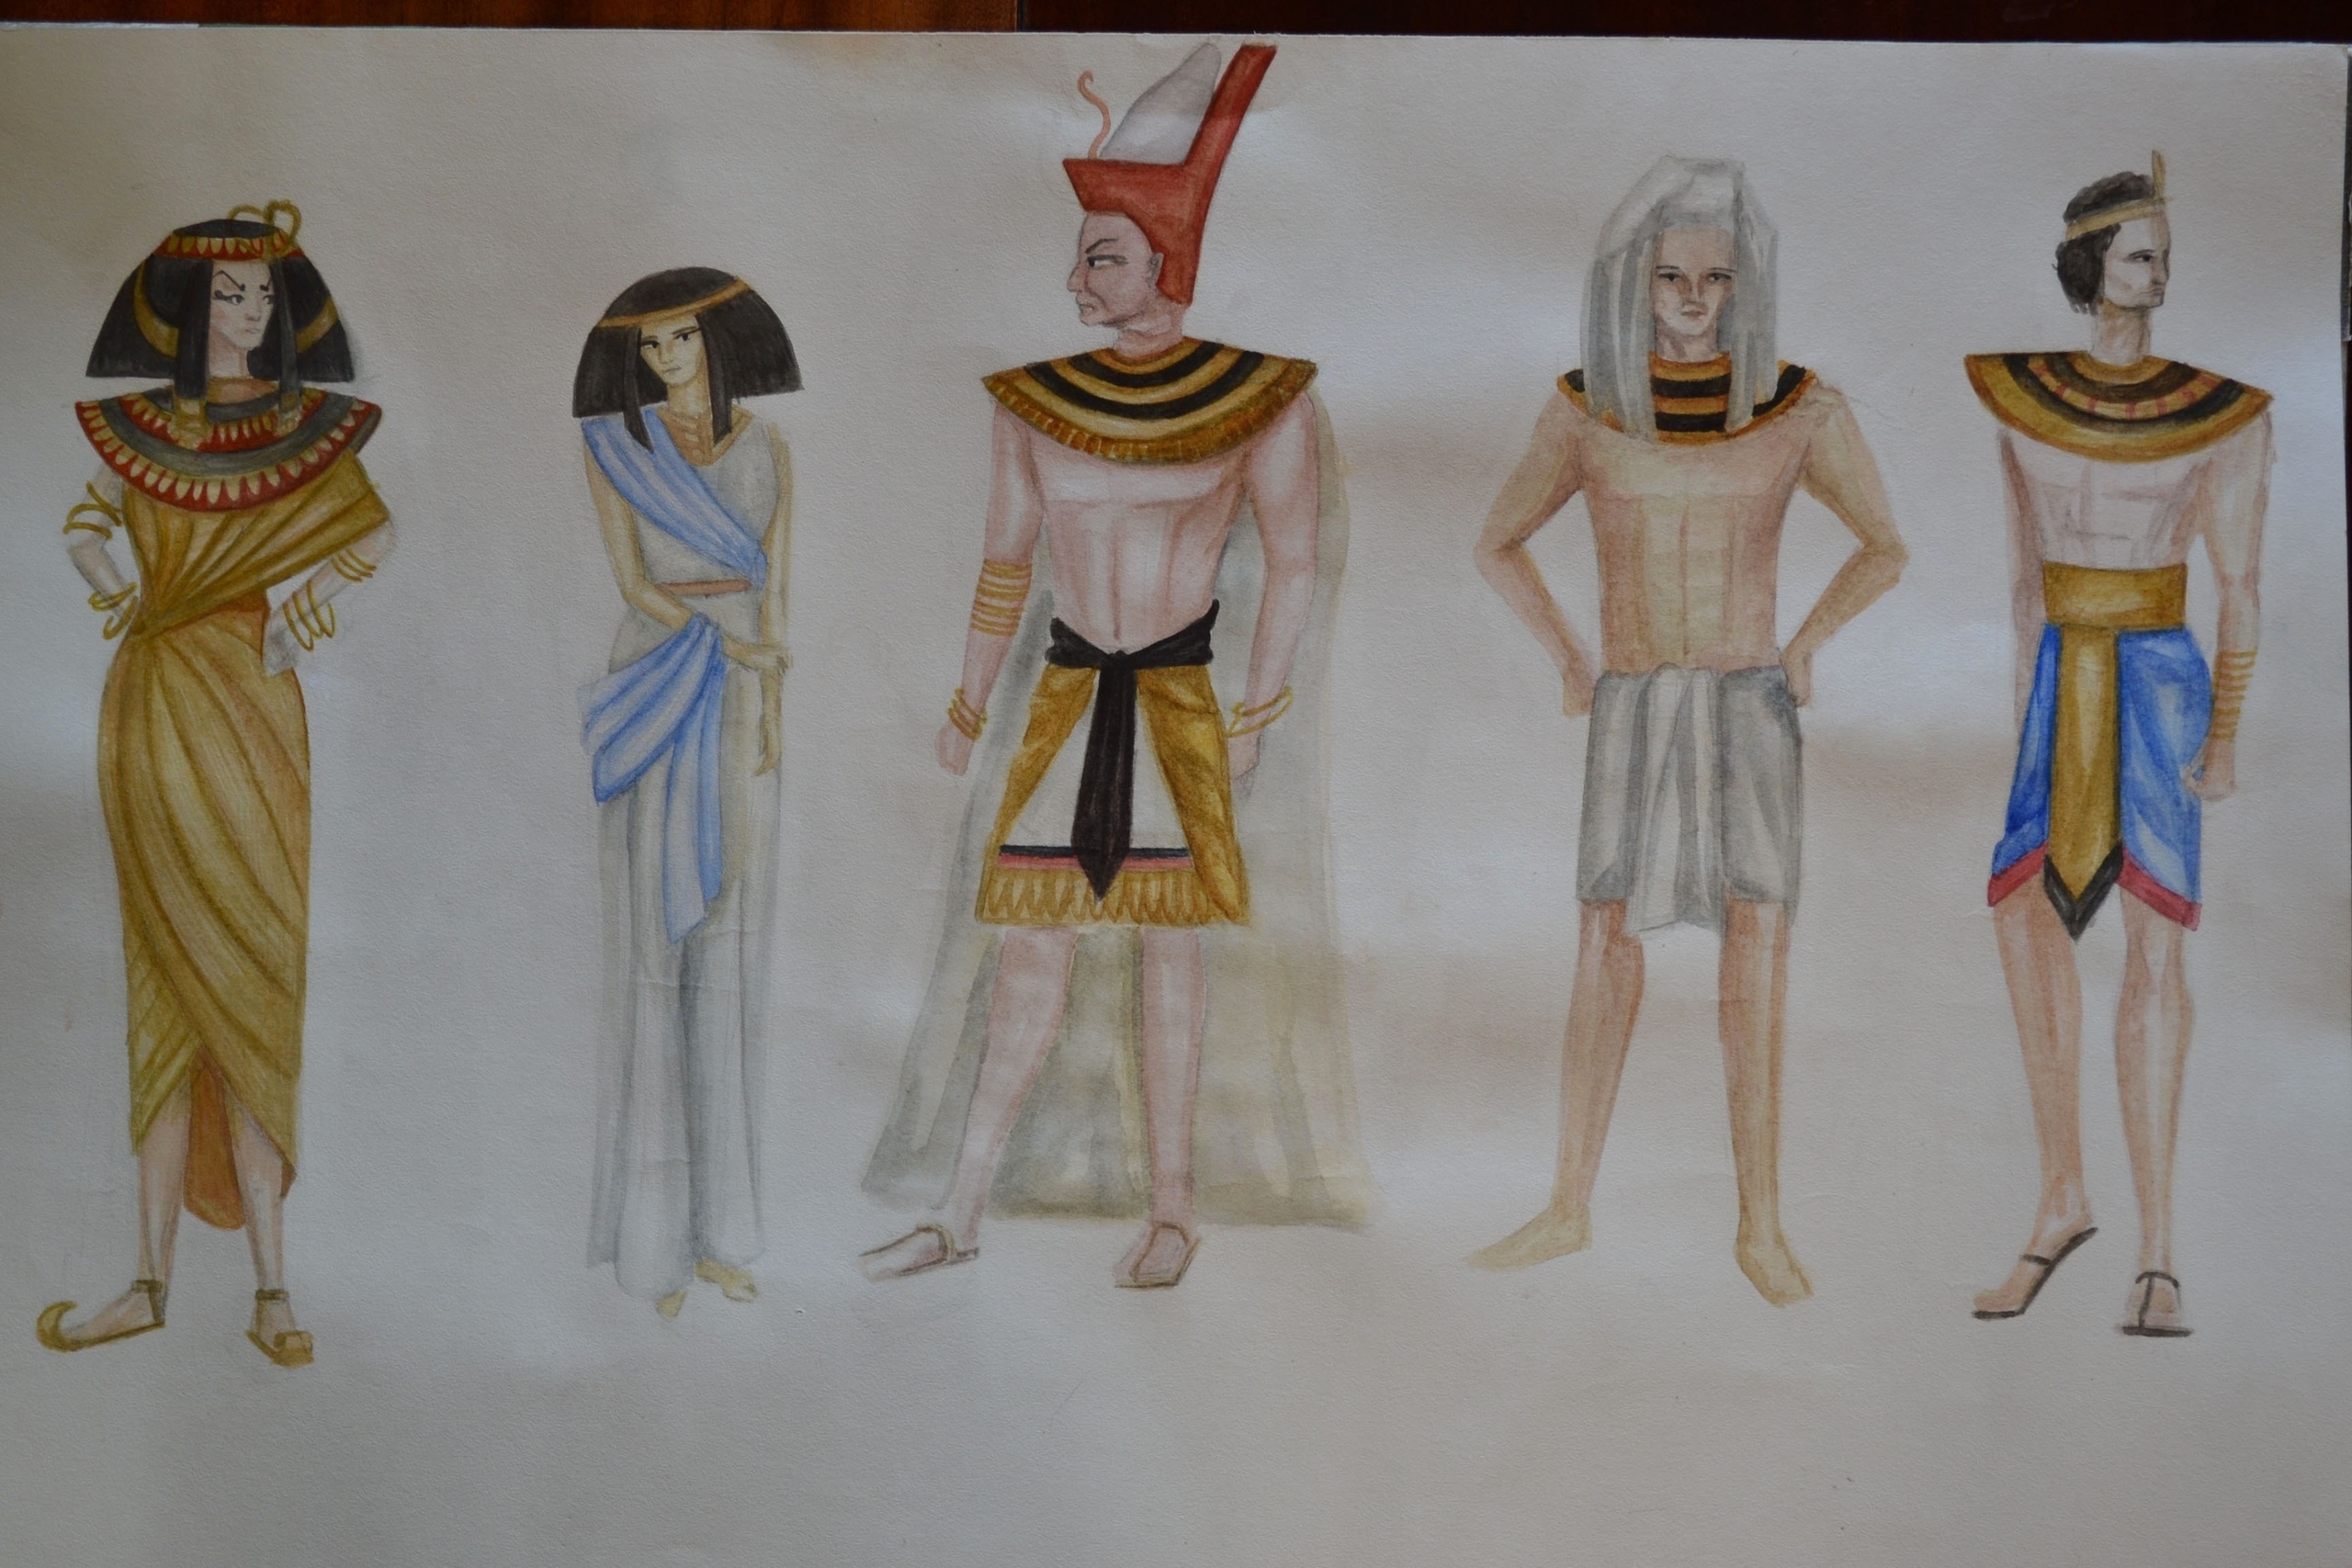 Карнавальный костюм Фараона